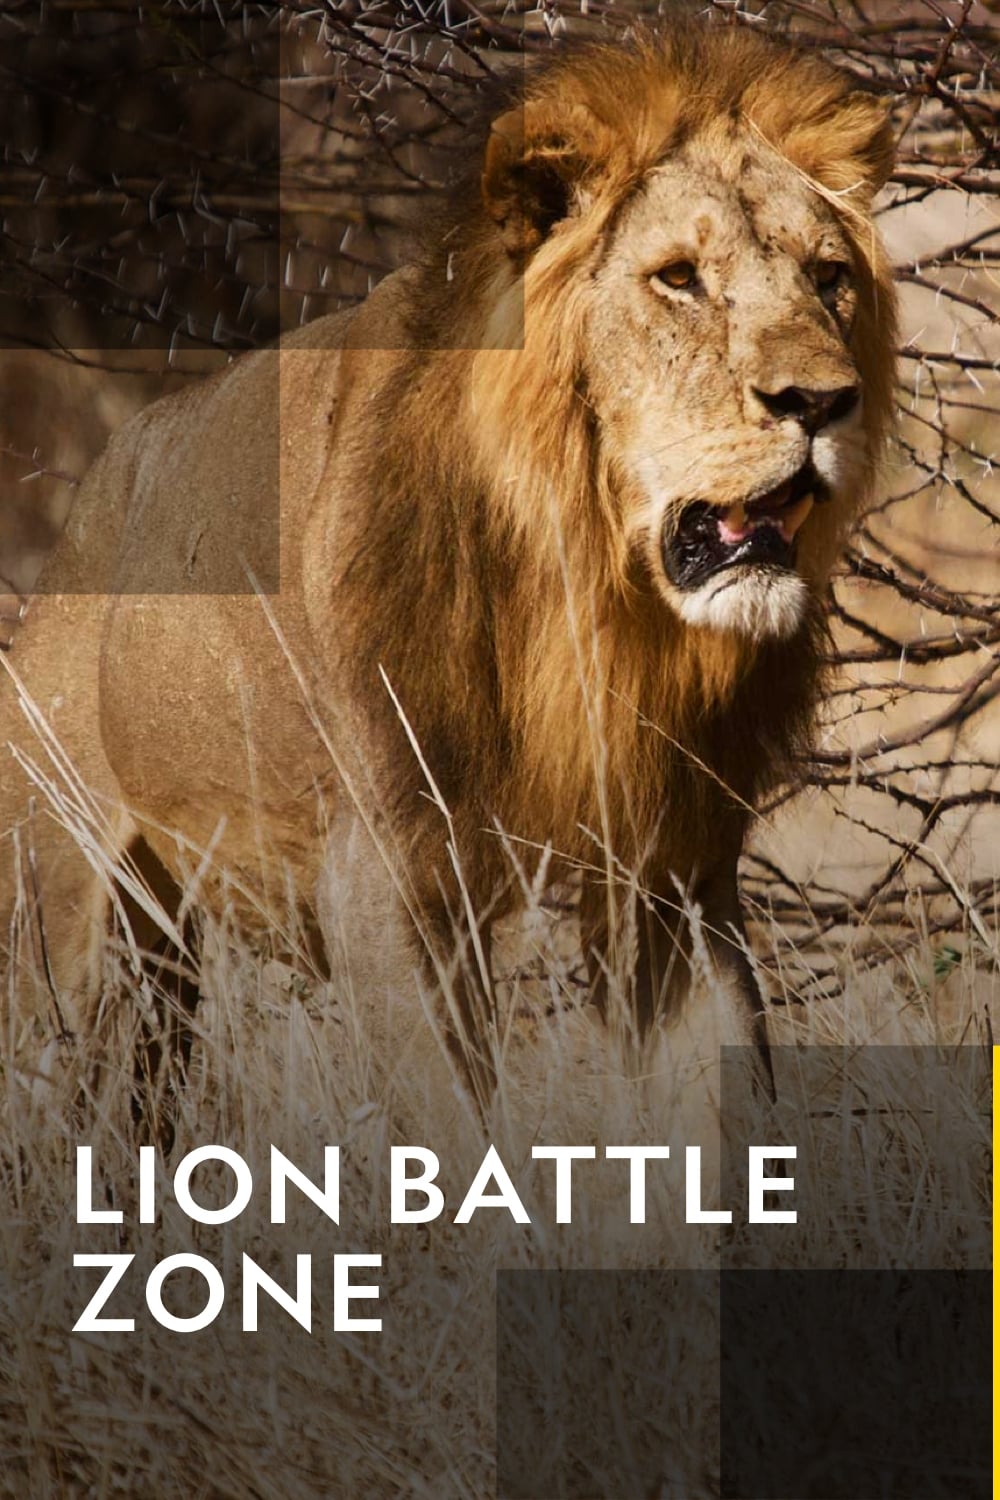 Lion Battle Zone